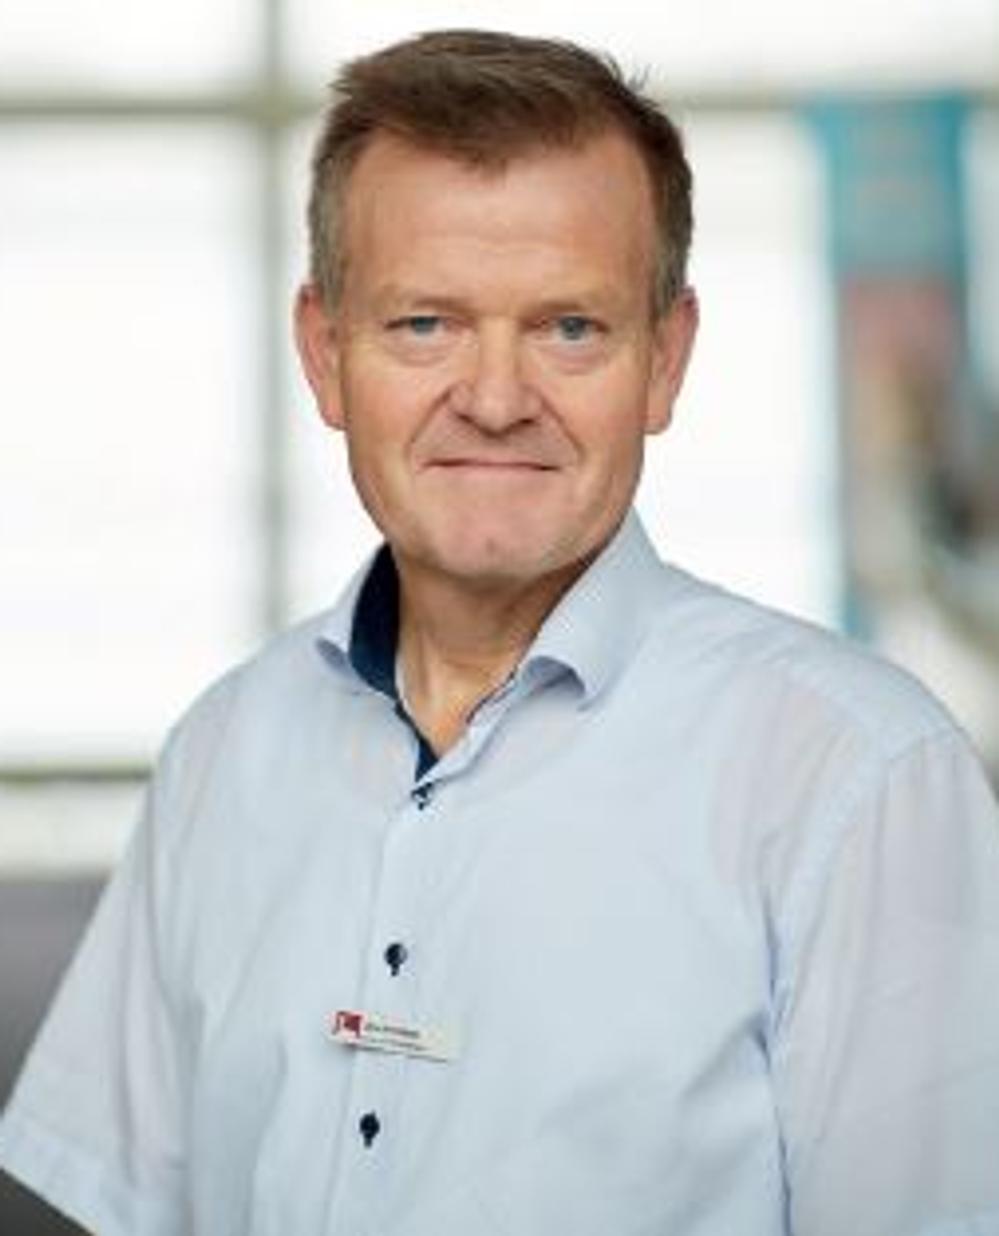 Direktøren for Sundby-Hvorup Boligselskab Jens Erik Grøn